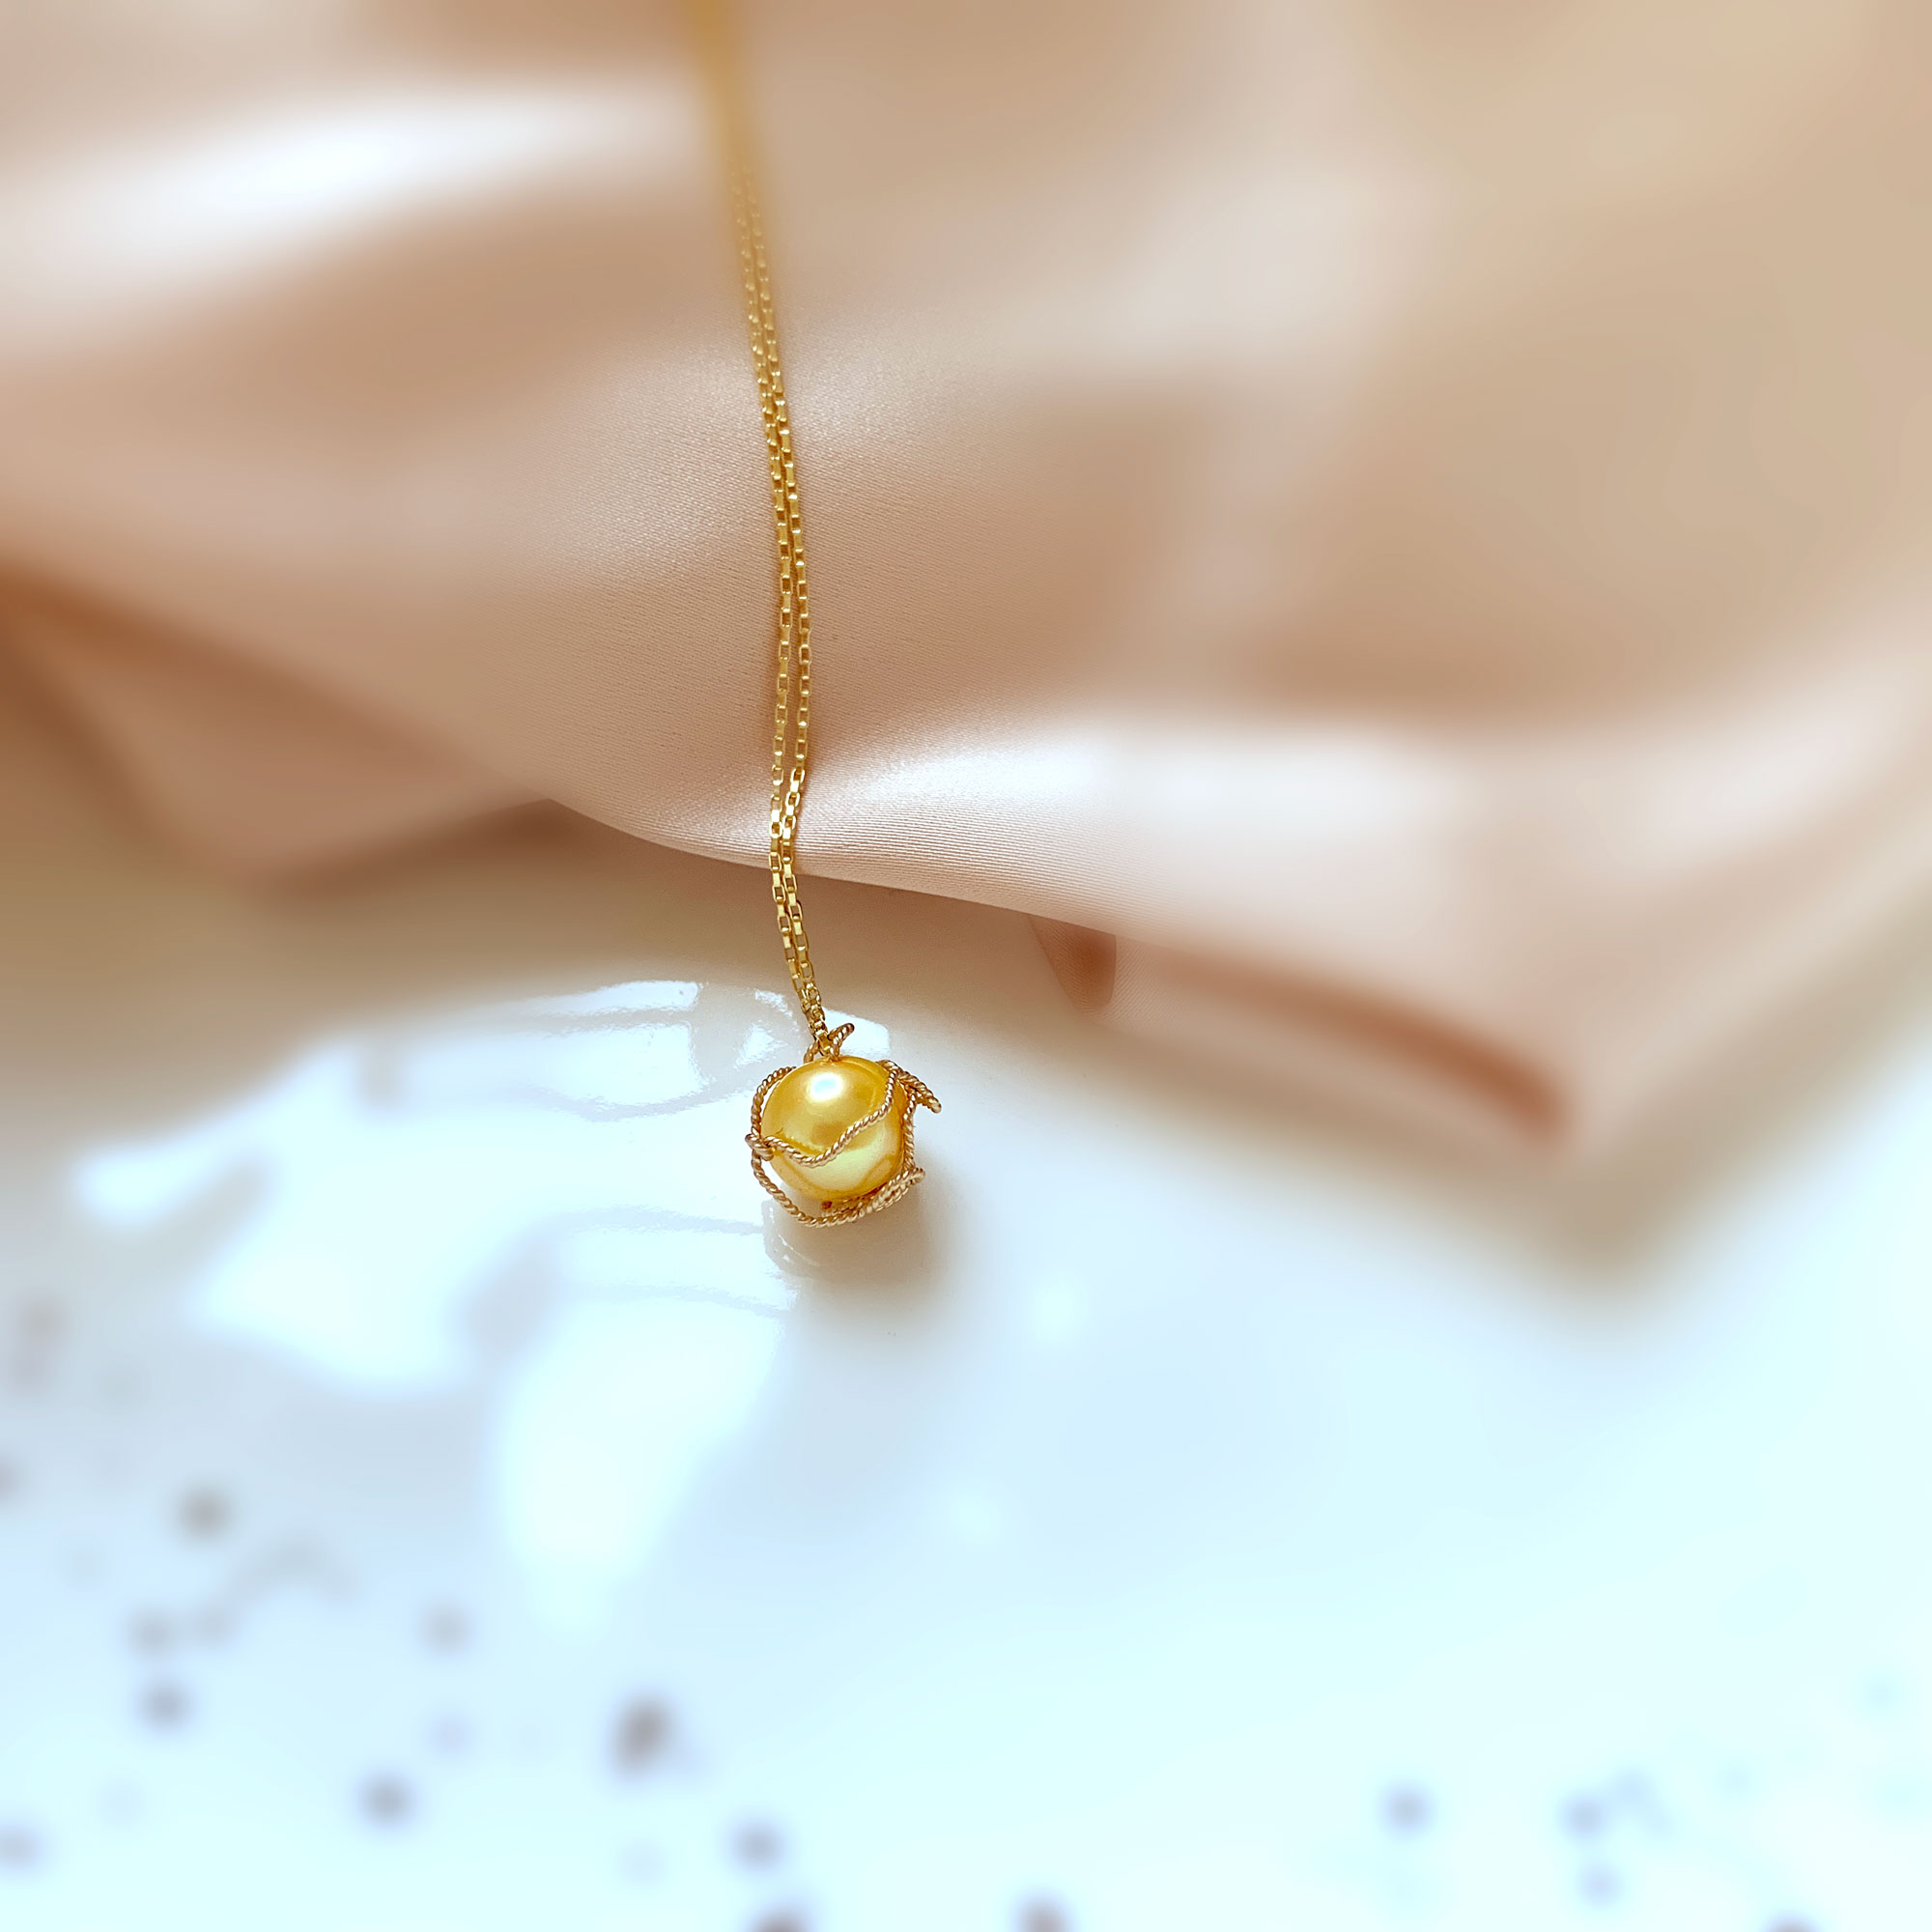 'Golden Touch' Pendant Necklace